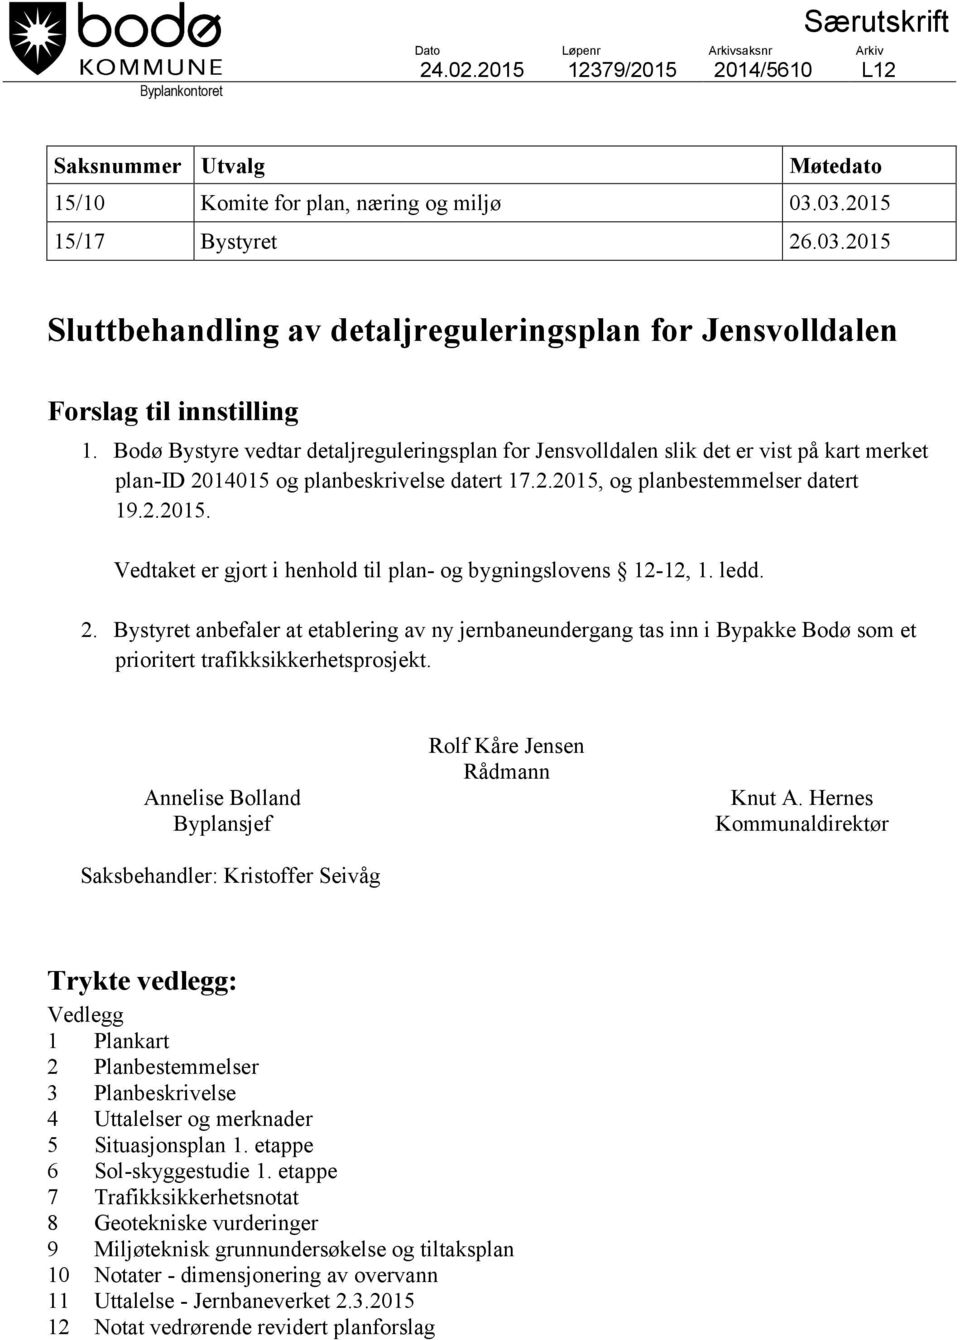 Bodø Bystyre vedtar detaljreguleringsplan for Jensvolldalen slik det er vist på kart merket plan-id 2014015 og planbeskrivelse datert 17.2.2015,